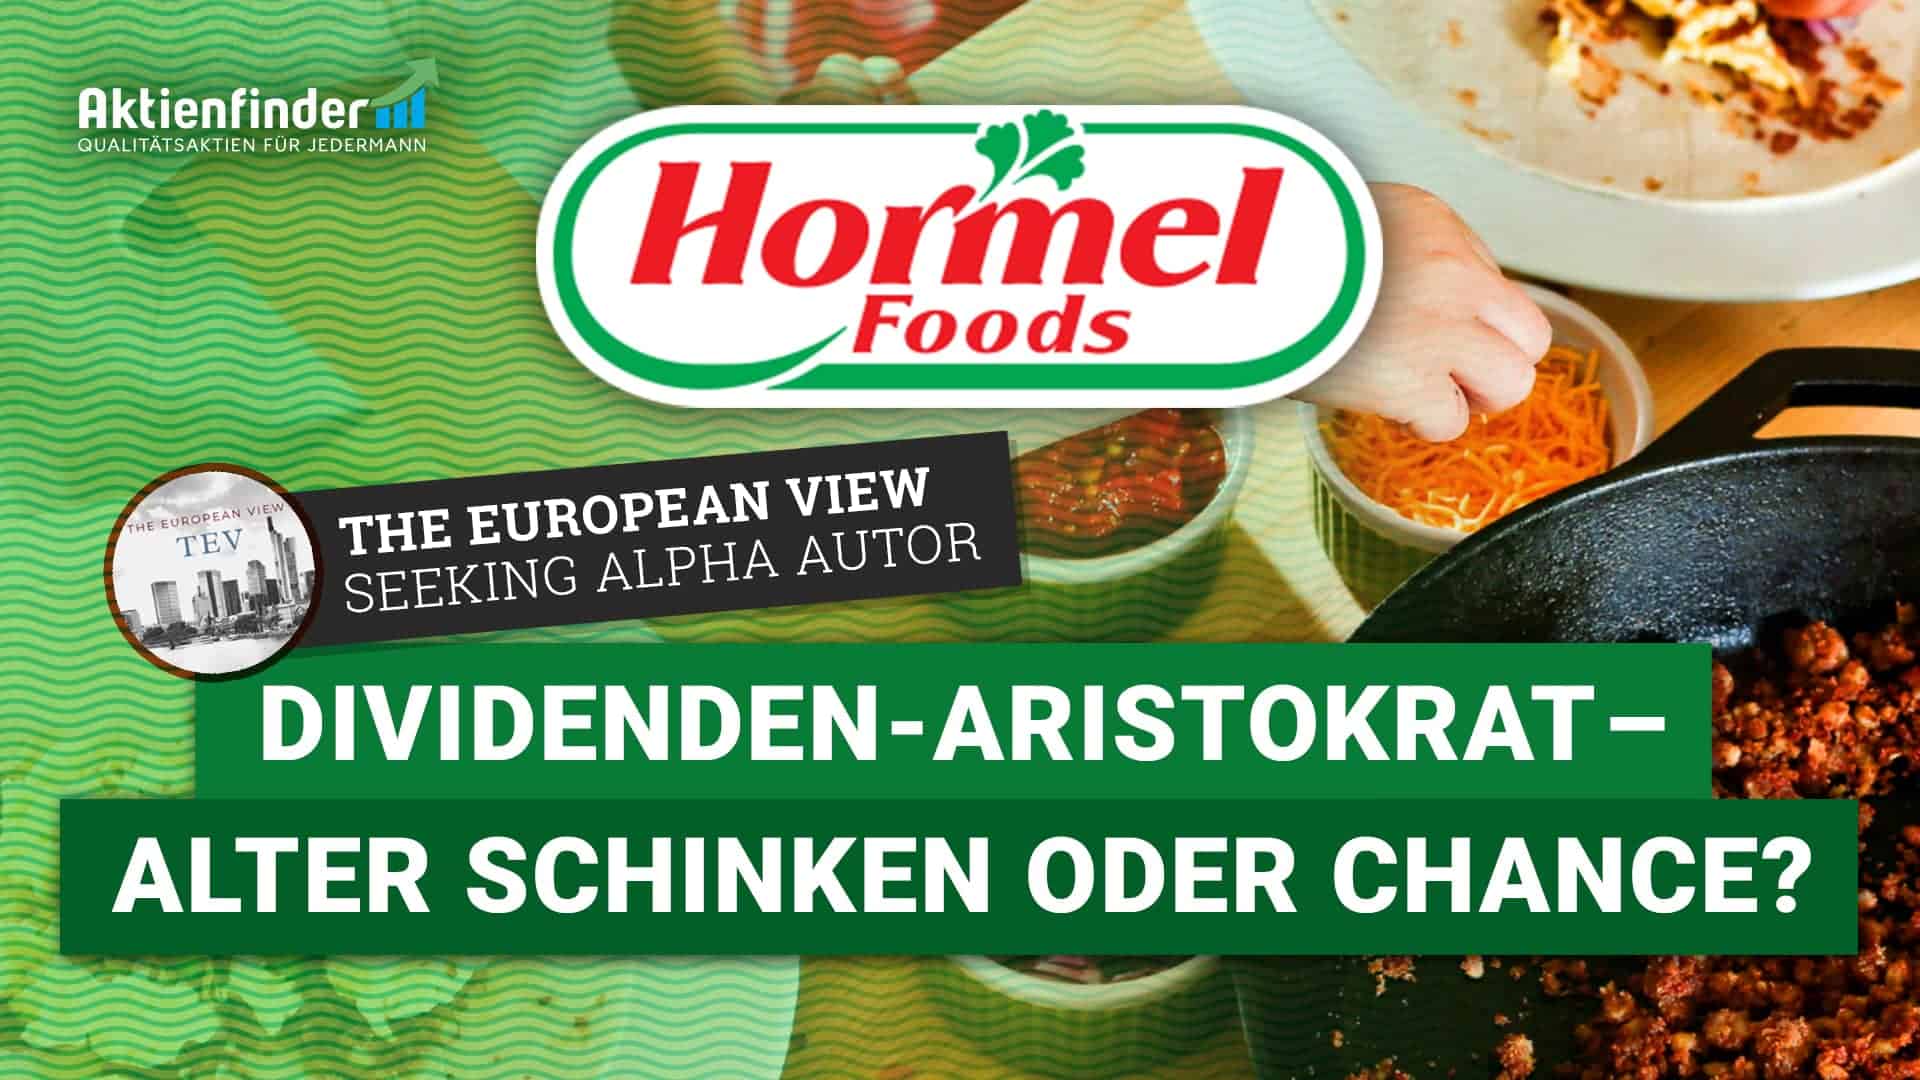 Hormel Foods Aktie - Dividenden Aristokrat als alter Schinken oder Chance